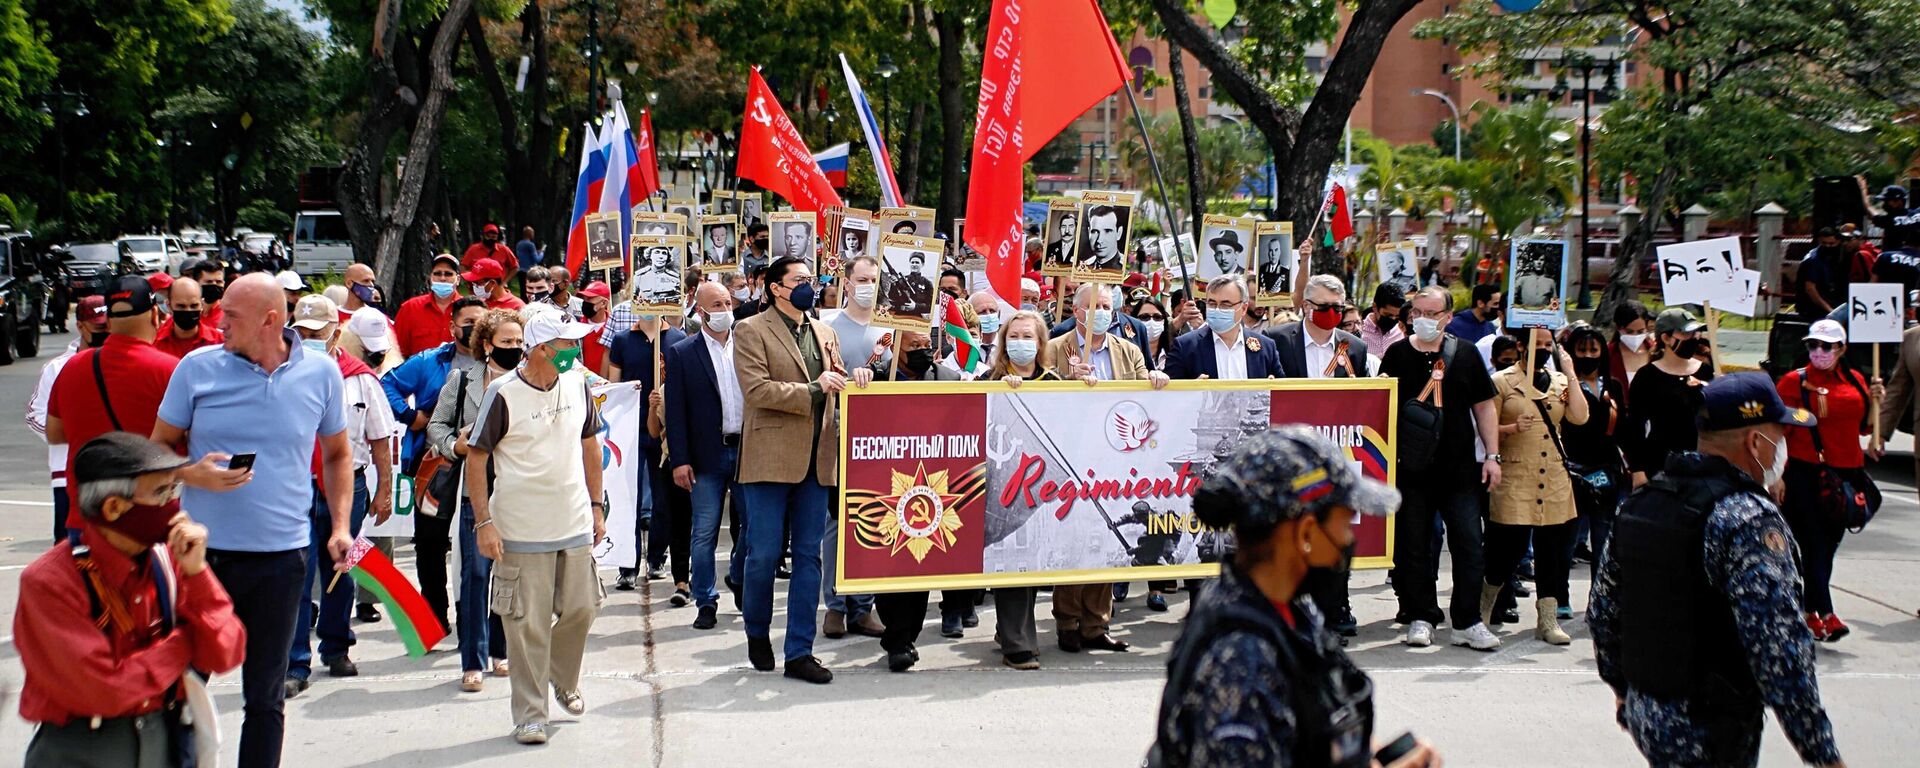 Marcha del Regimiento Inmortal en Caracas - Sputnik Mundo, 1920, 07.05.2022